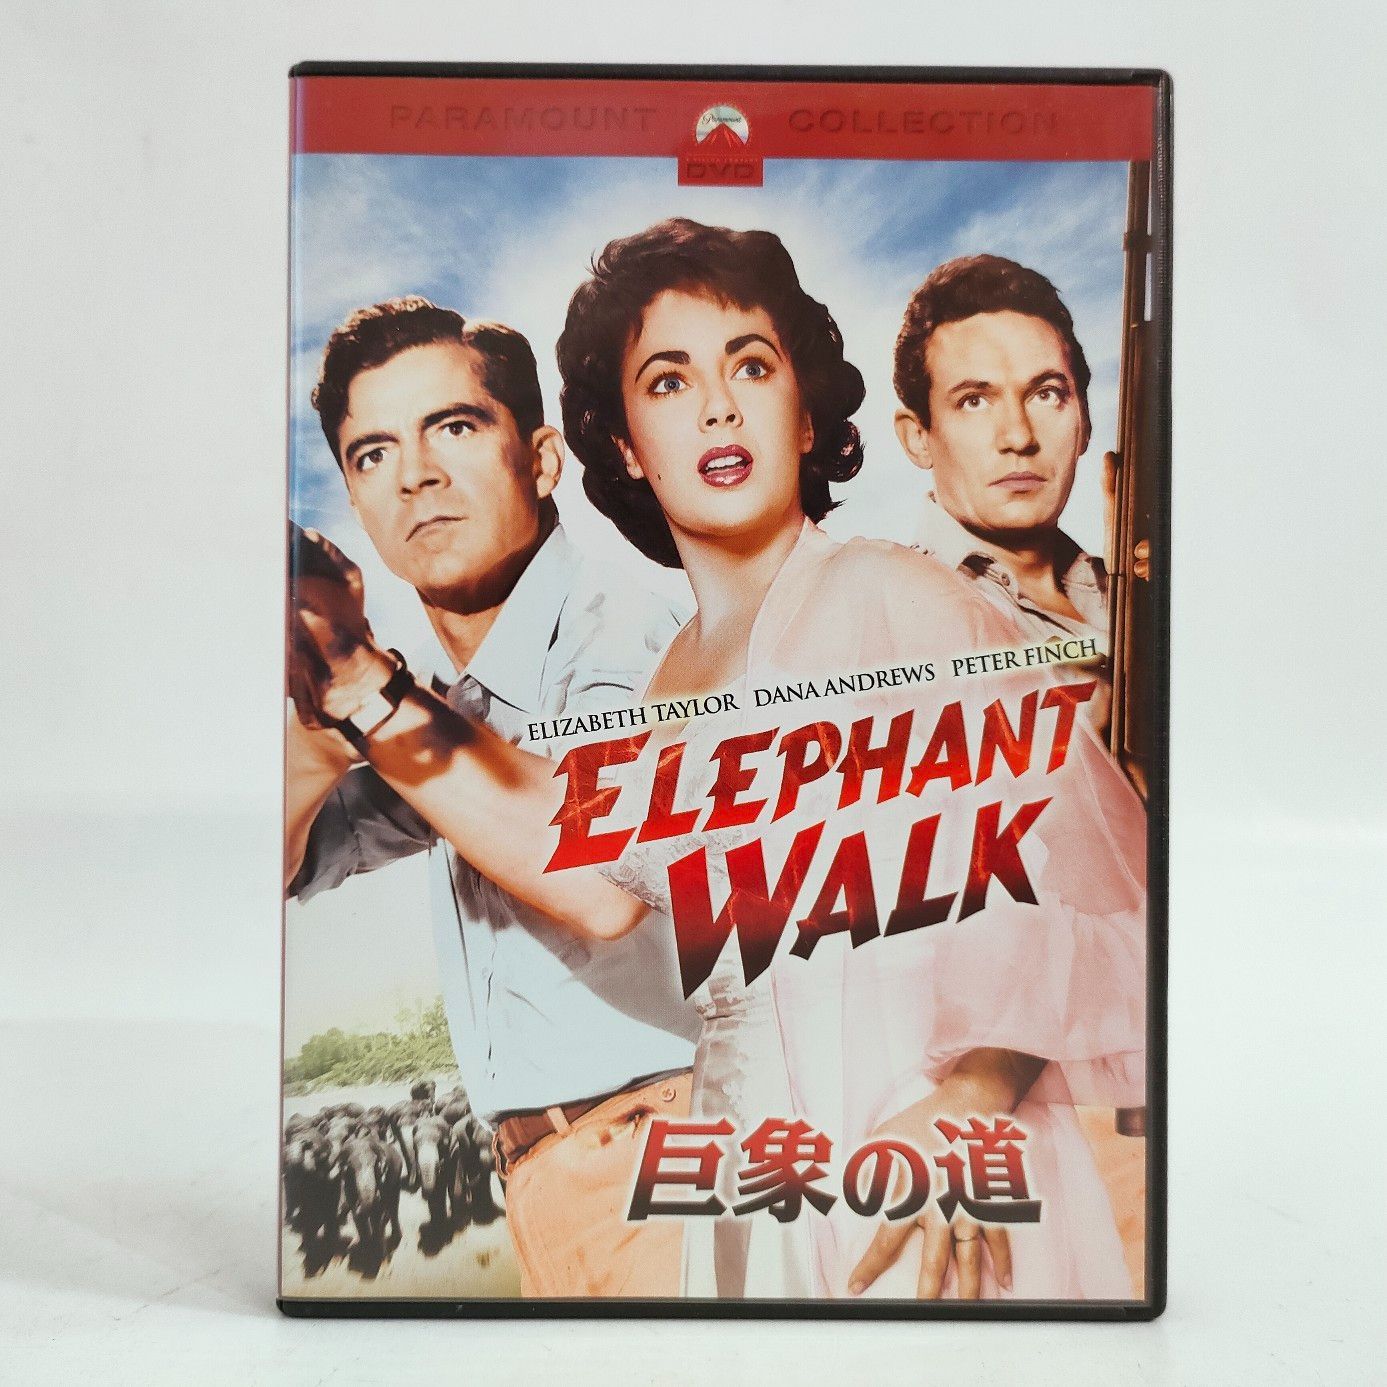 DVD 巨象の道 ELEPHANT WALK エリザベス・テイラー - メルカリ